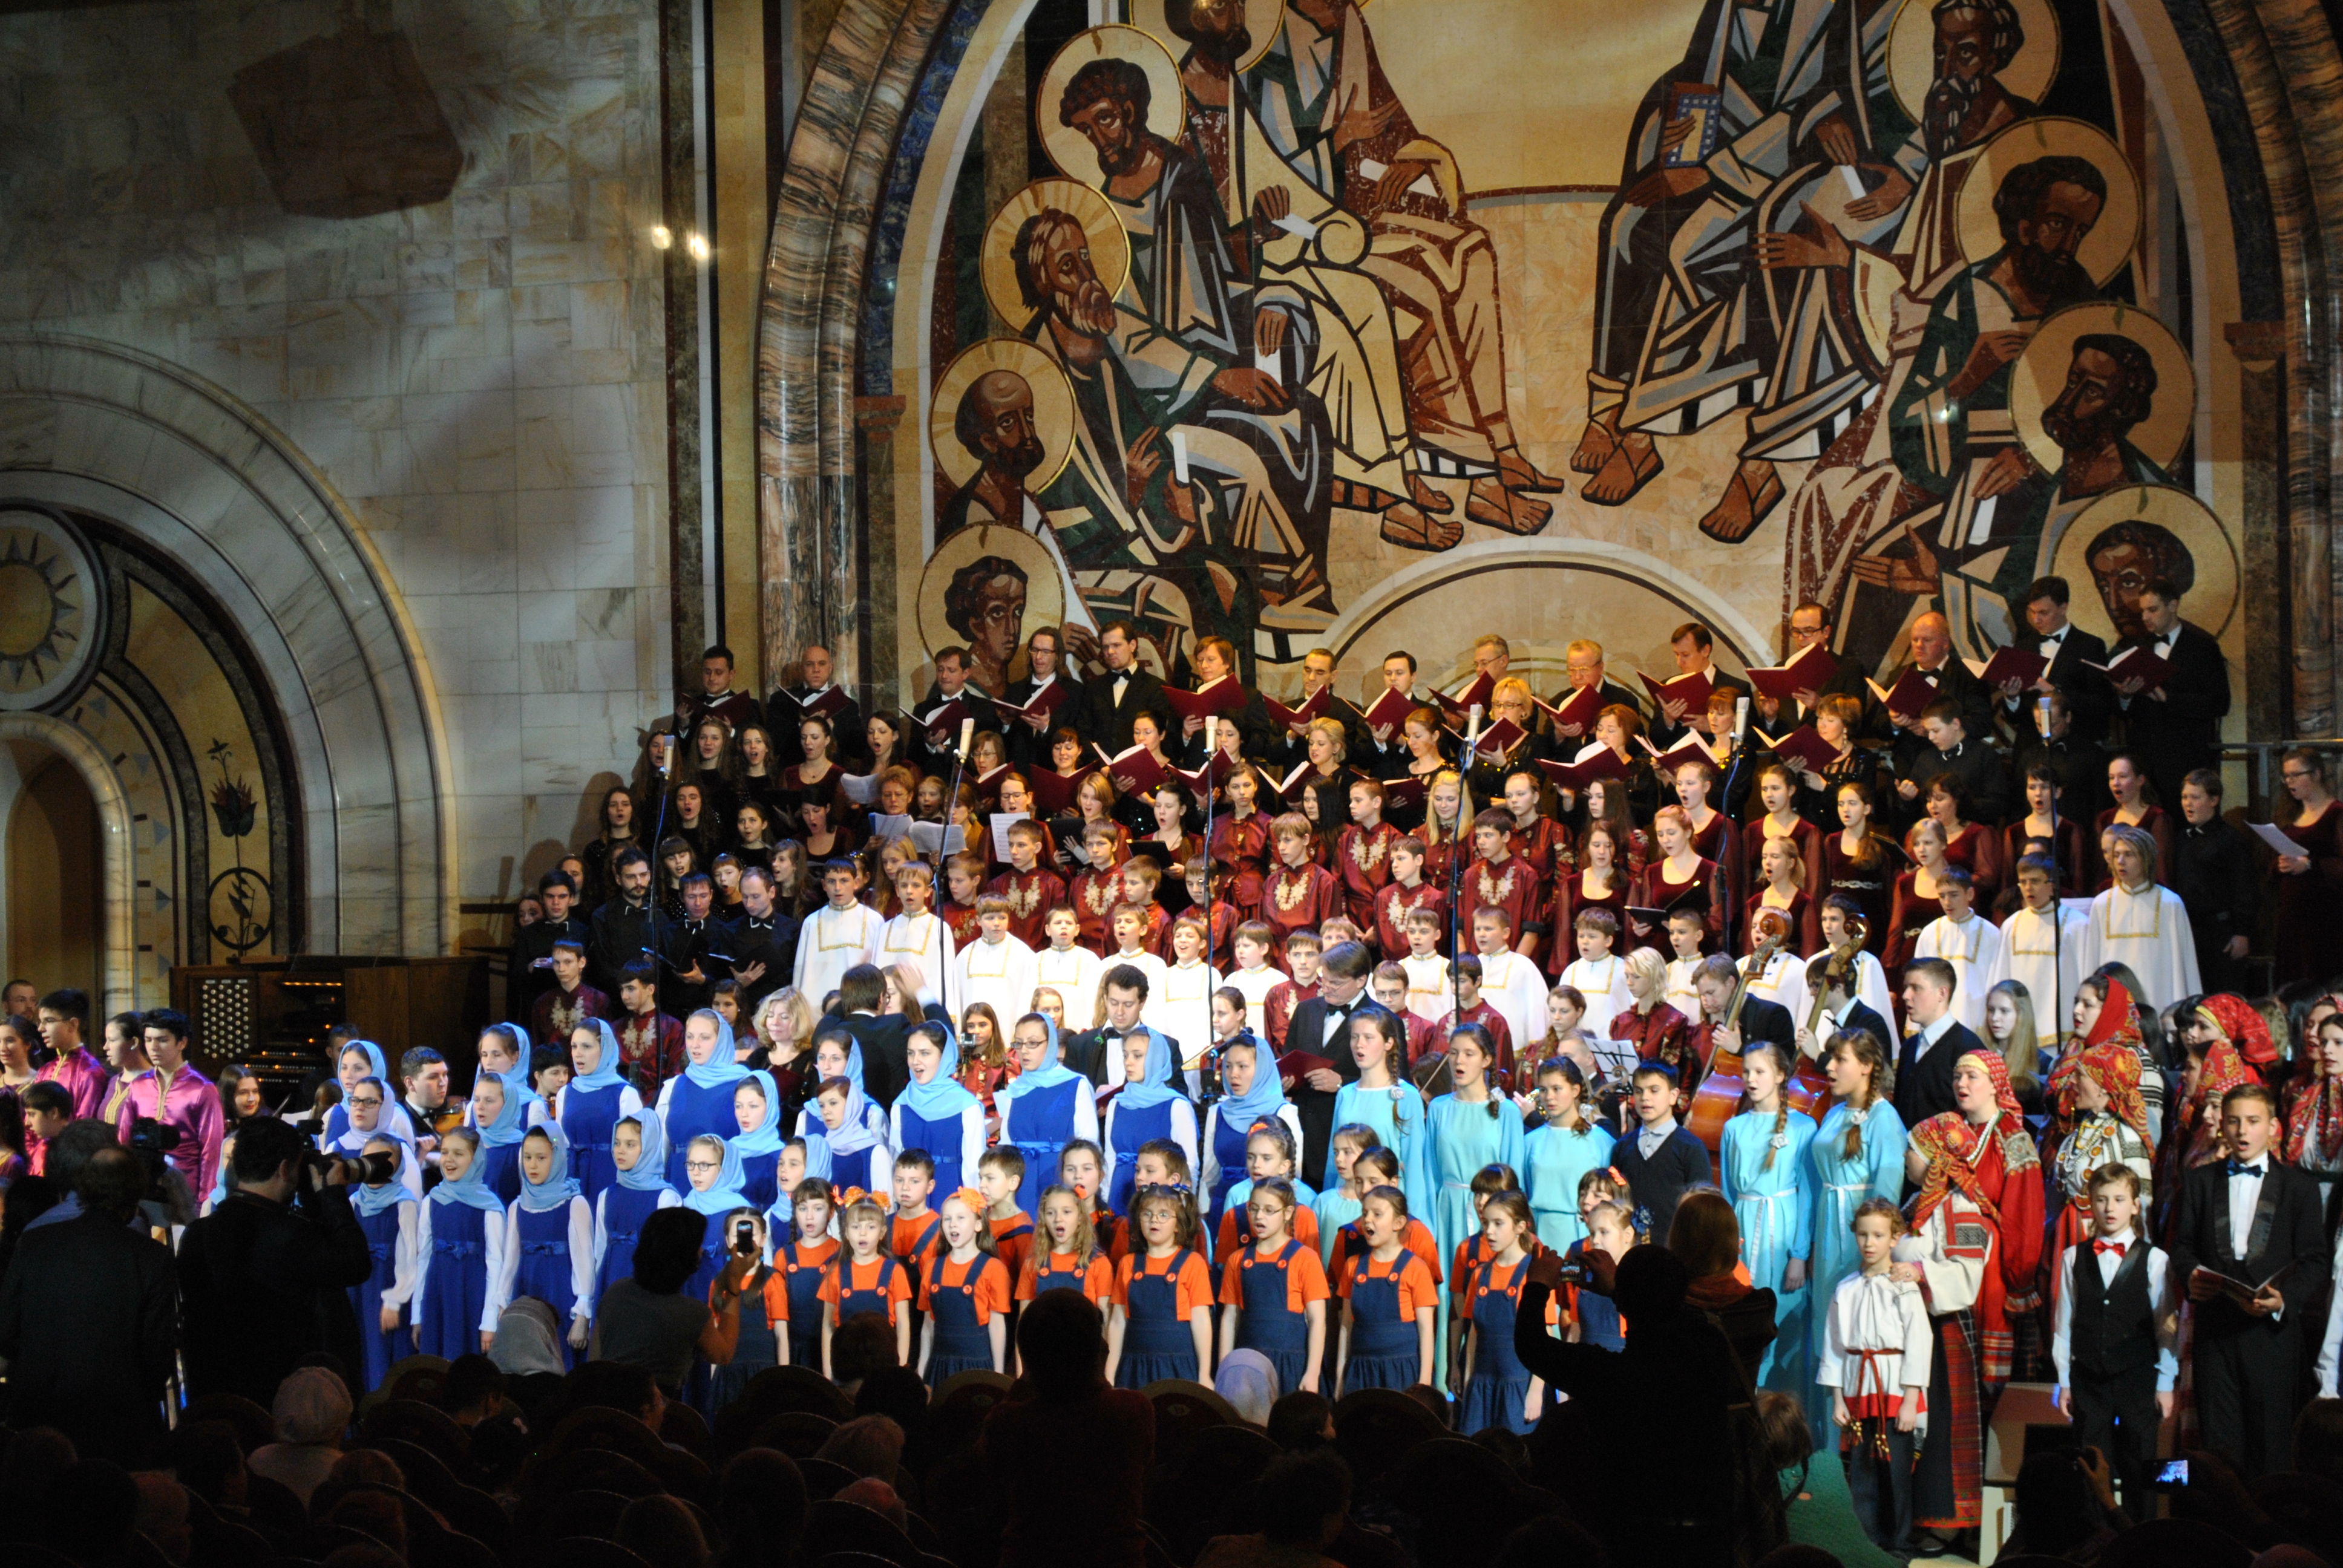 Русский православный хор